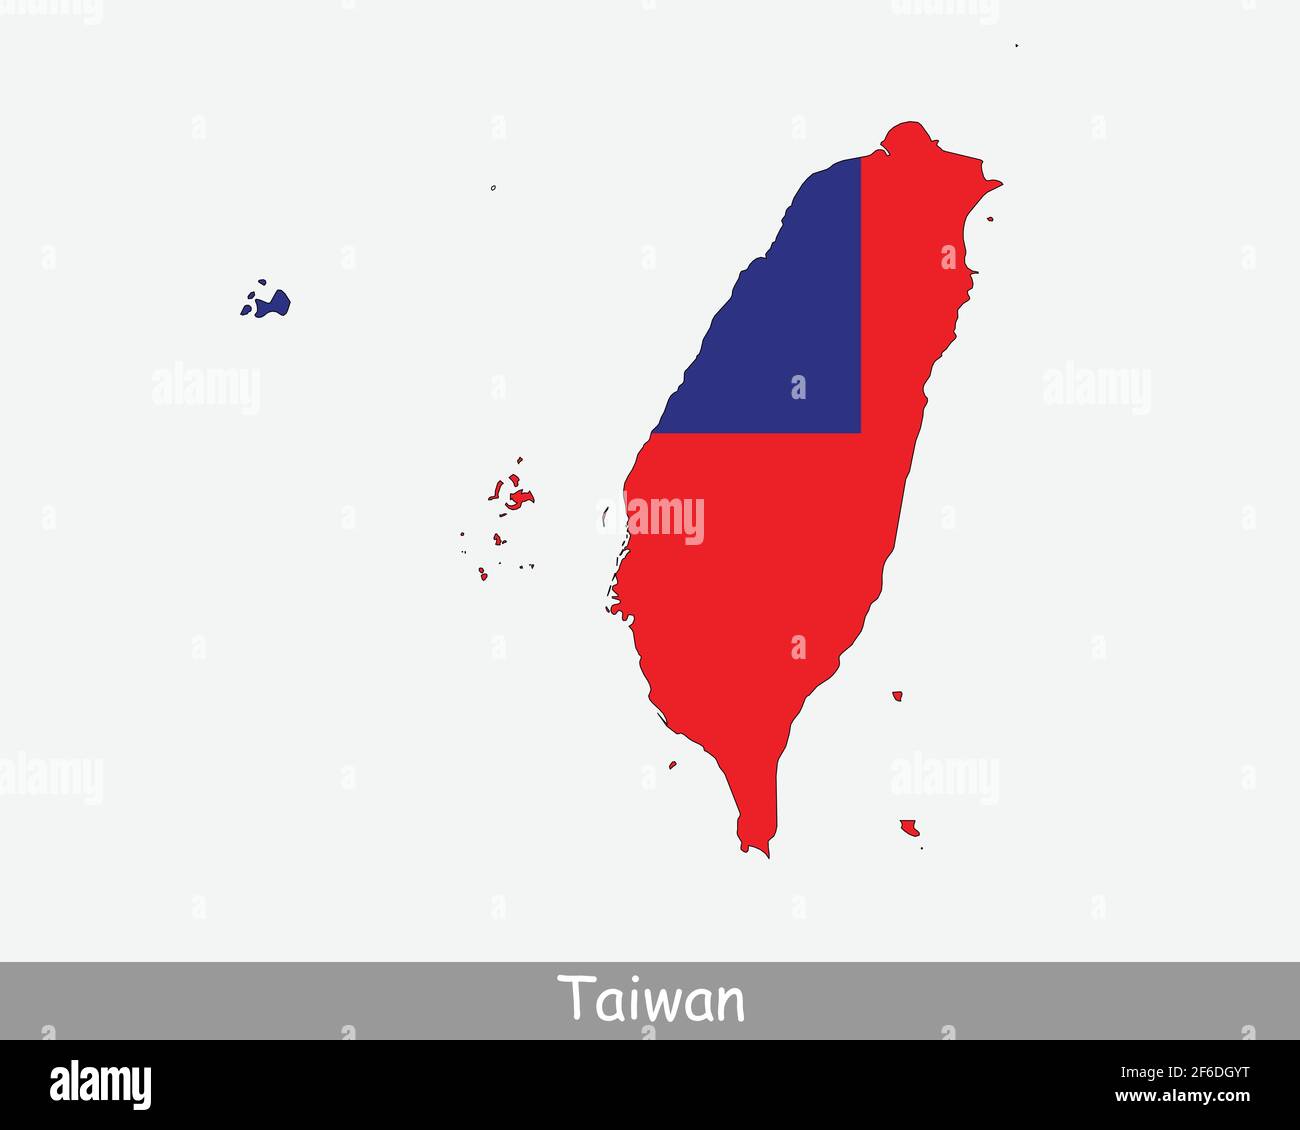 Taiwan Flag Map. Karte der Republik China mit der taiwanesischen Nationalflagge isoliert auf weißem Hintergrund. Vektorgrafik. Stock Vektor